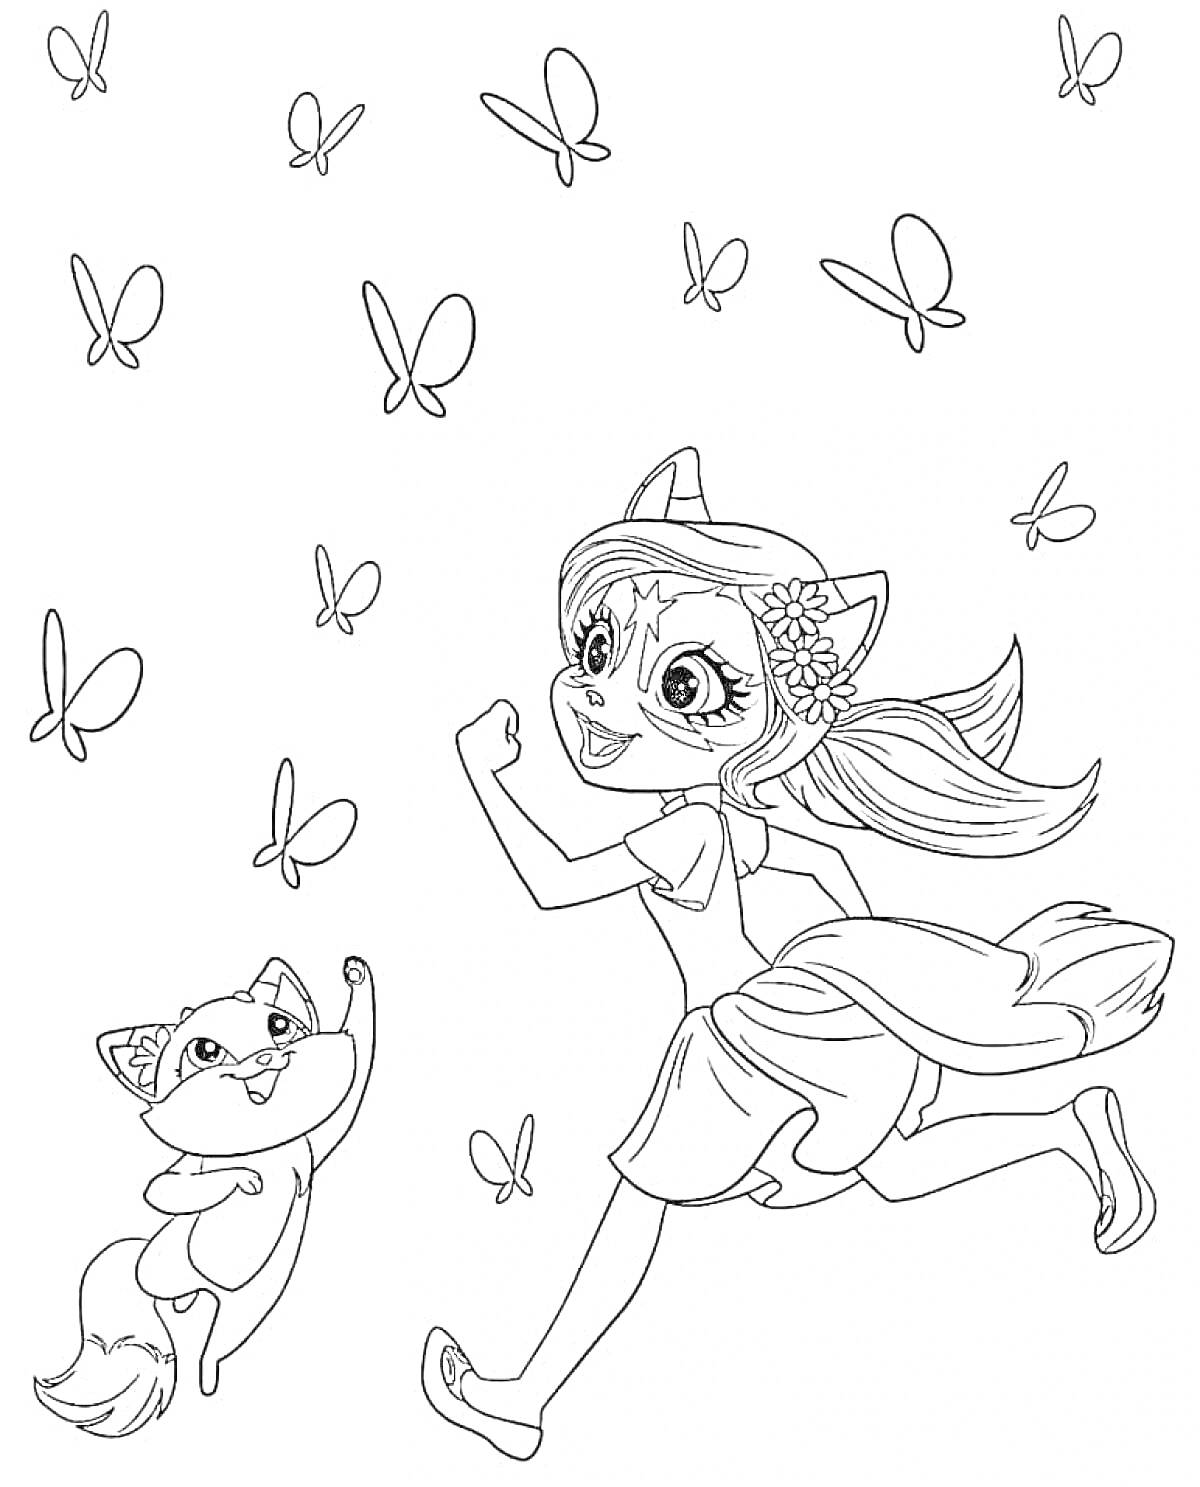 Раскраска Девочка с ушками и хвостом, бежит рядом с лисичкой, бабочки вокруг